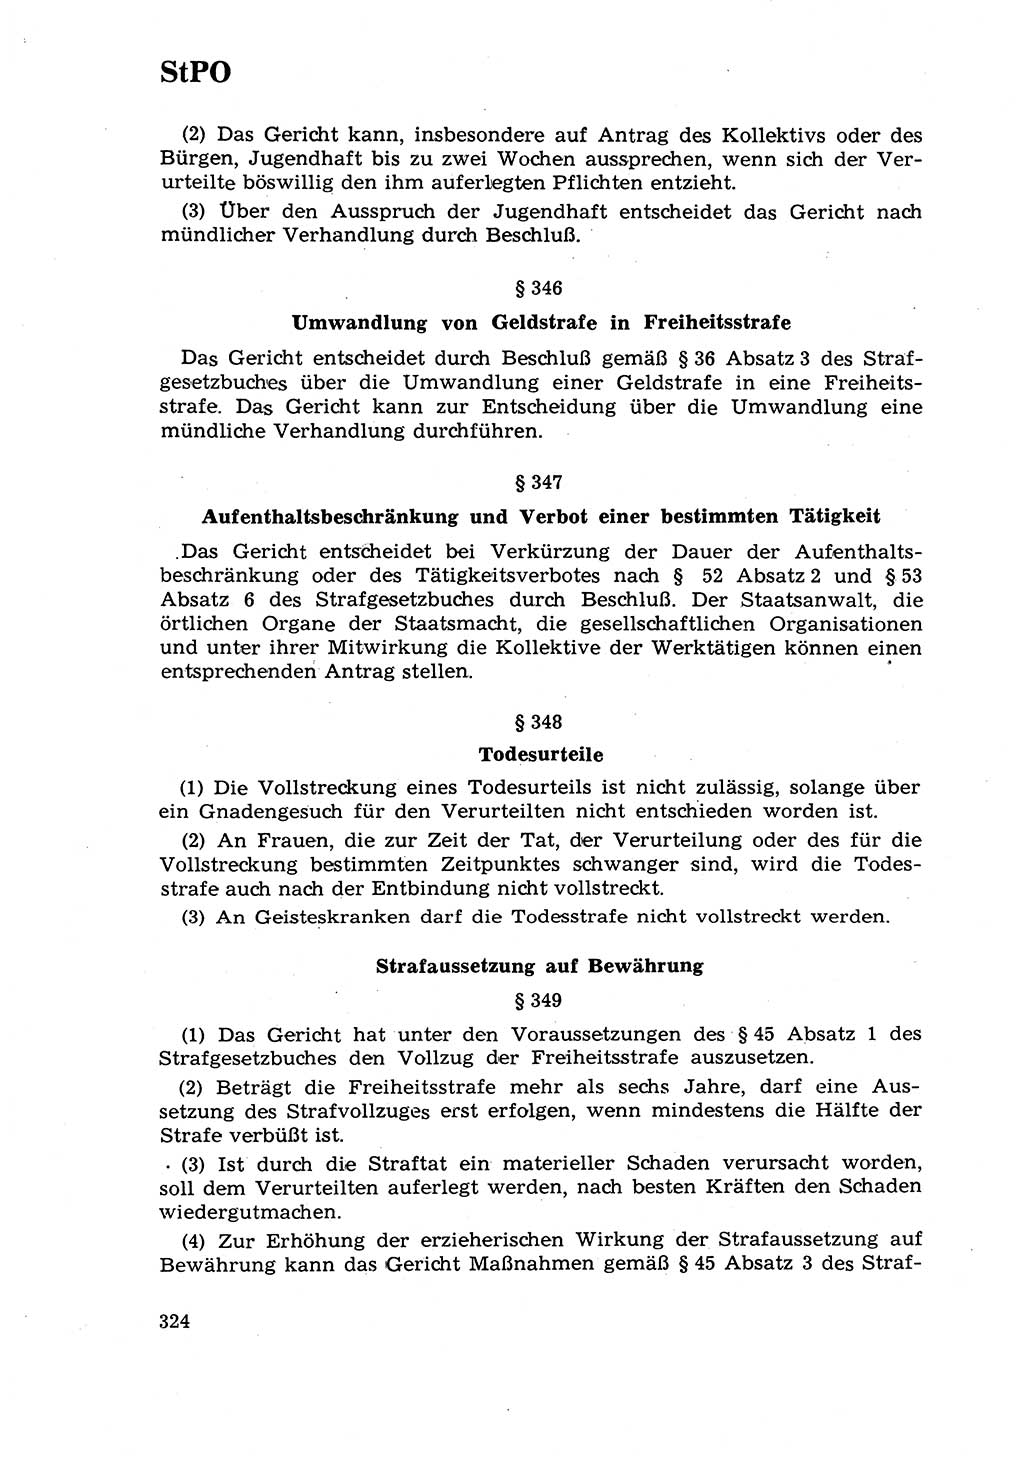 Strafrecht [Deutsche Demokratische Republik (DDR)] 1968, Seite 324 (Strafr. DDR 1968, S. 324)